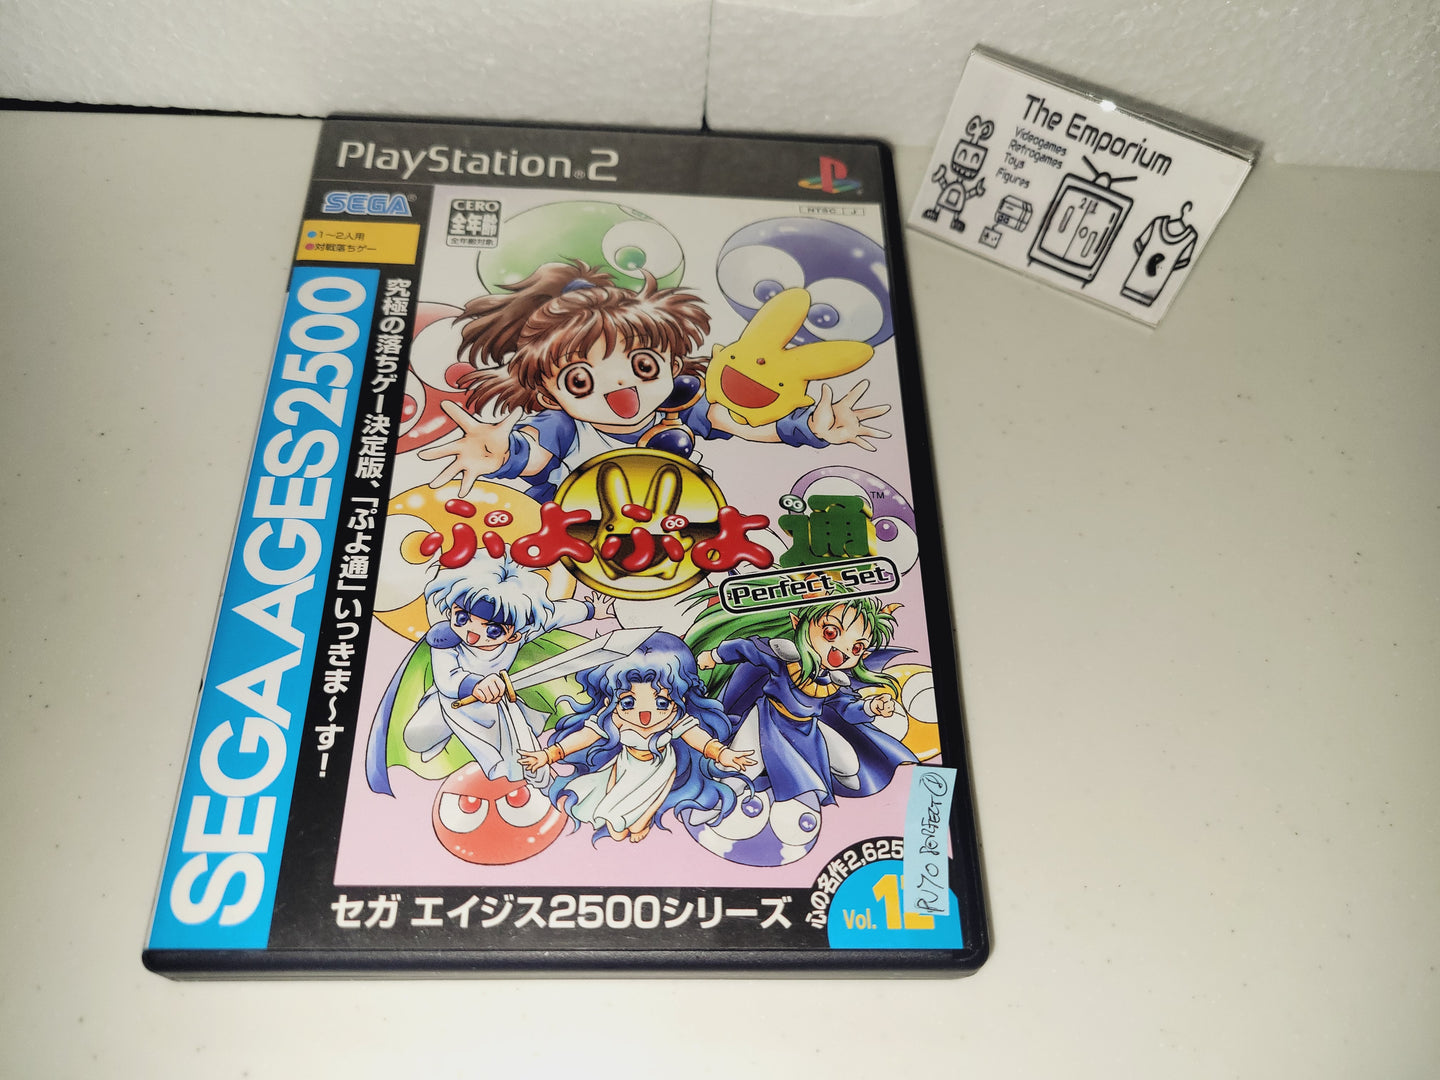 Sega AGES 2500 Series Vol. 12 Puyo Puyo Perfect Set - Sony playstation 2